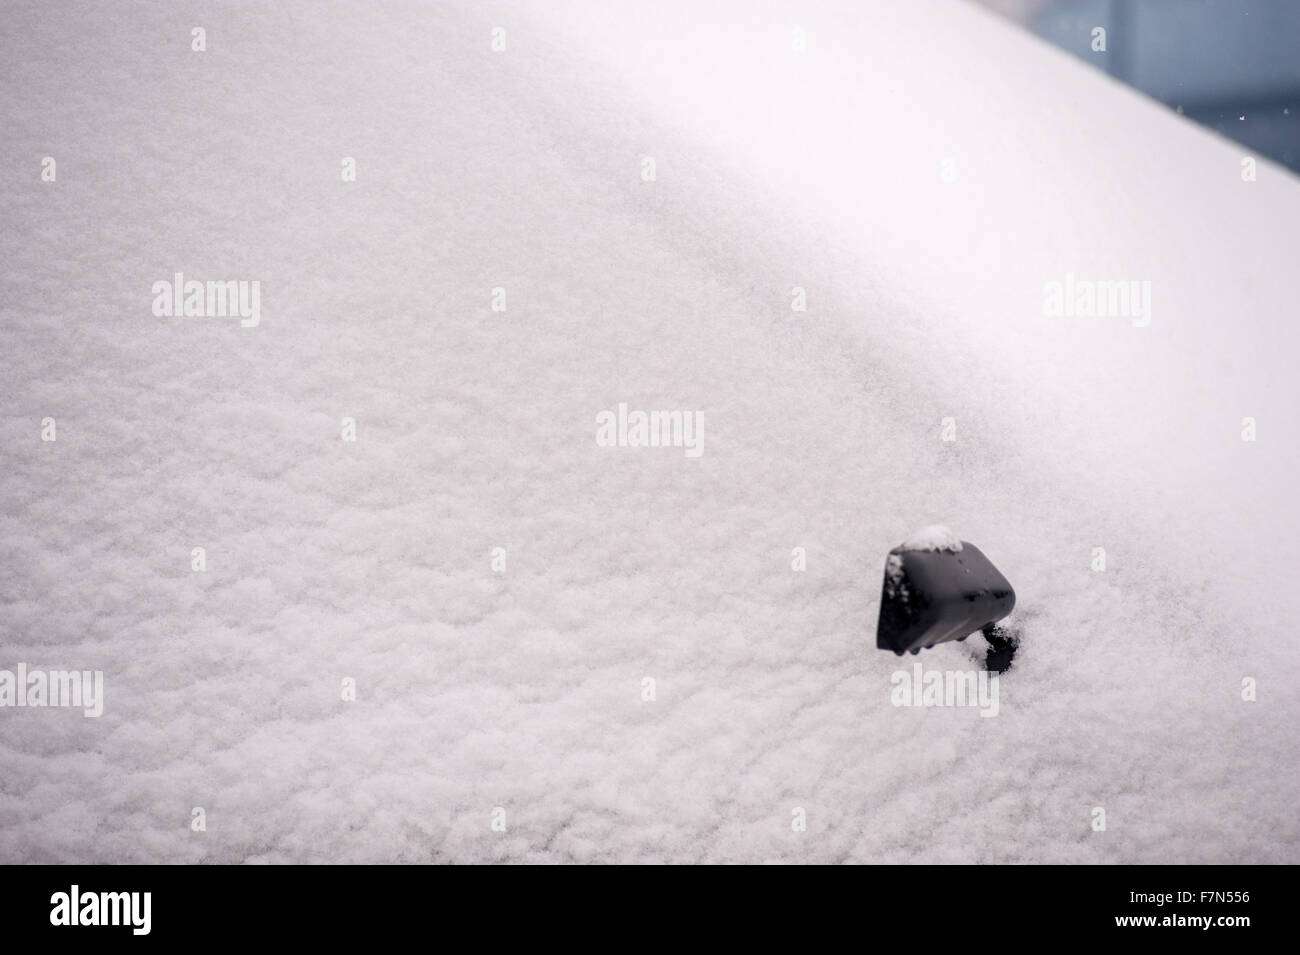 Voiture couverte de neige avec wing mirror montrant à travers la neige Banque D'Images